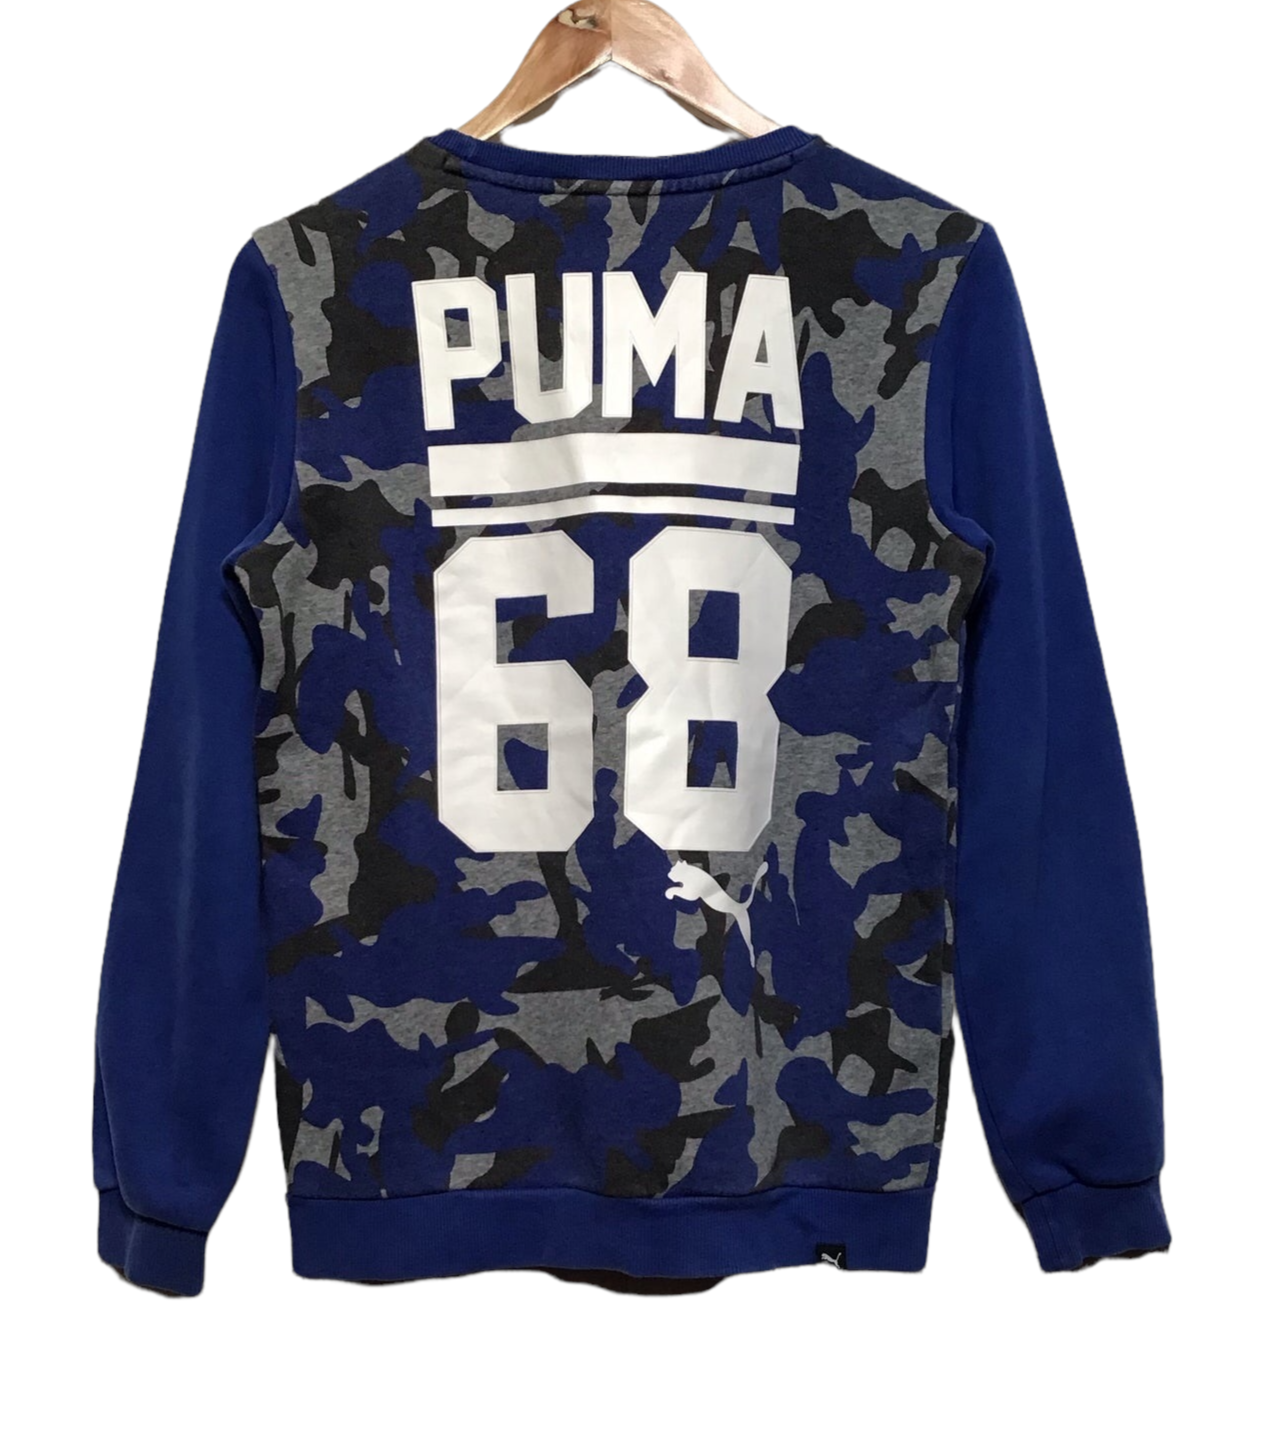 01 - Most Popular PUMA Basket Suede Platform Black Beige 363559 - RvceShops  | 398891 - Puma Korkki X NJR Trucker - 01 Womens Sneakers 'Grey'